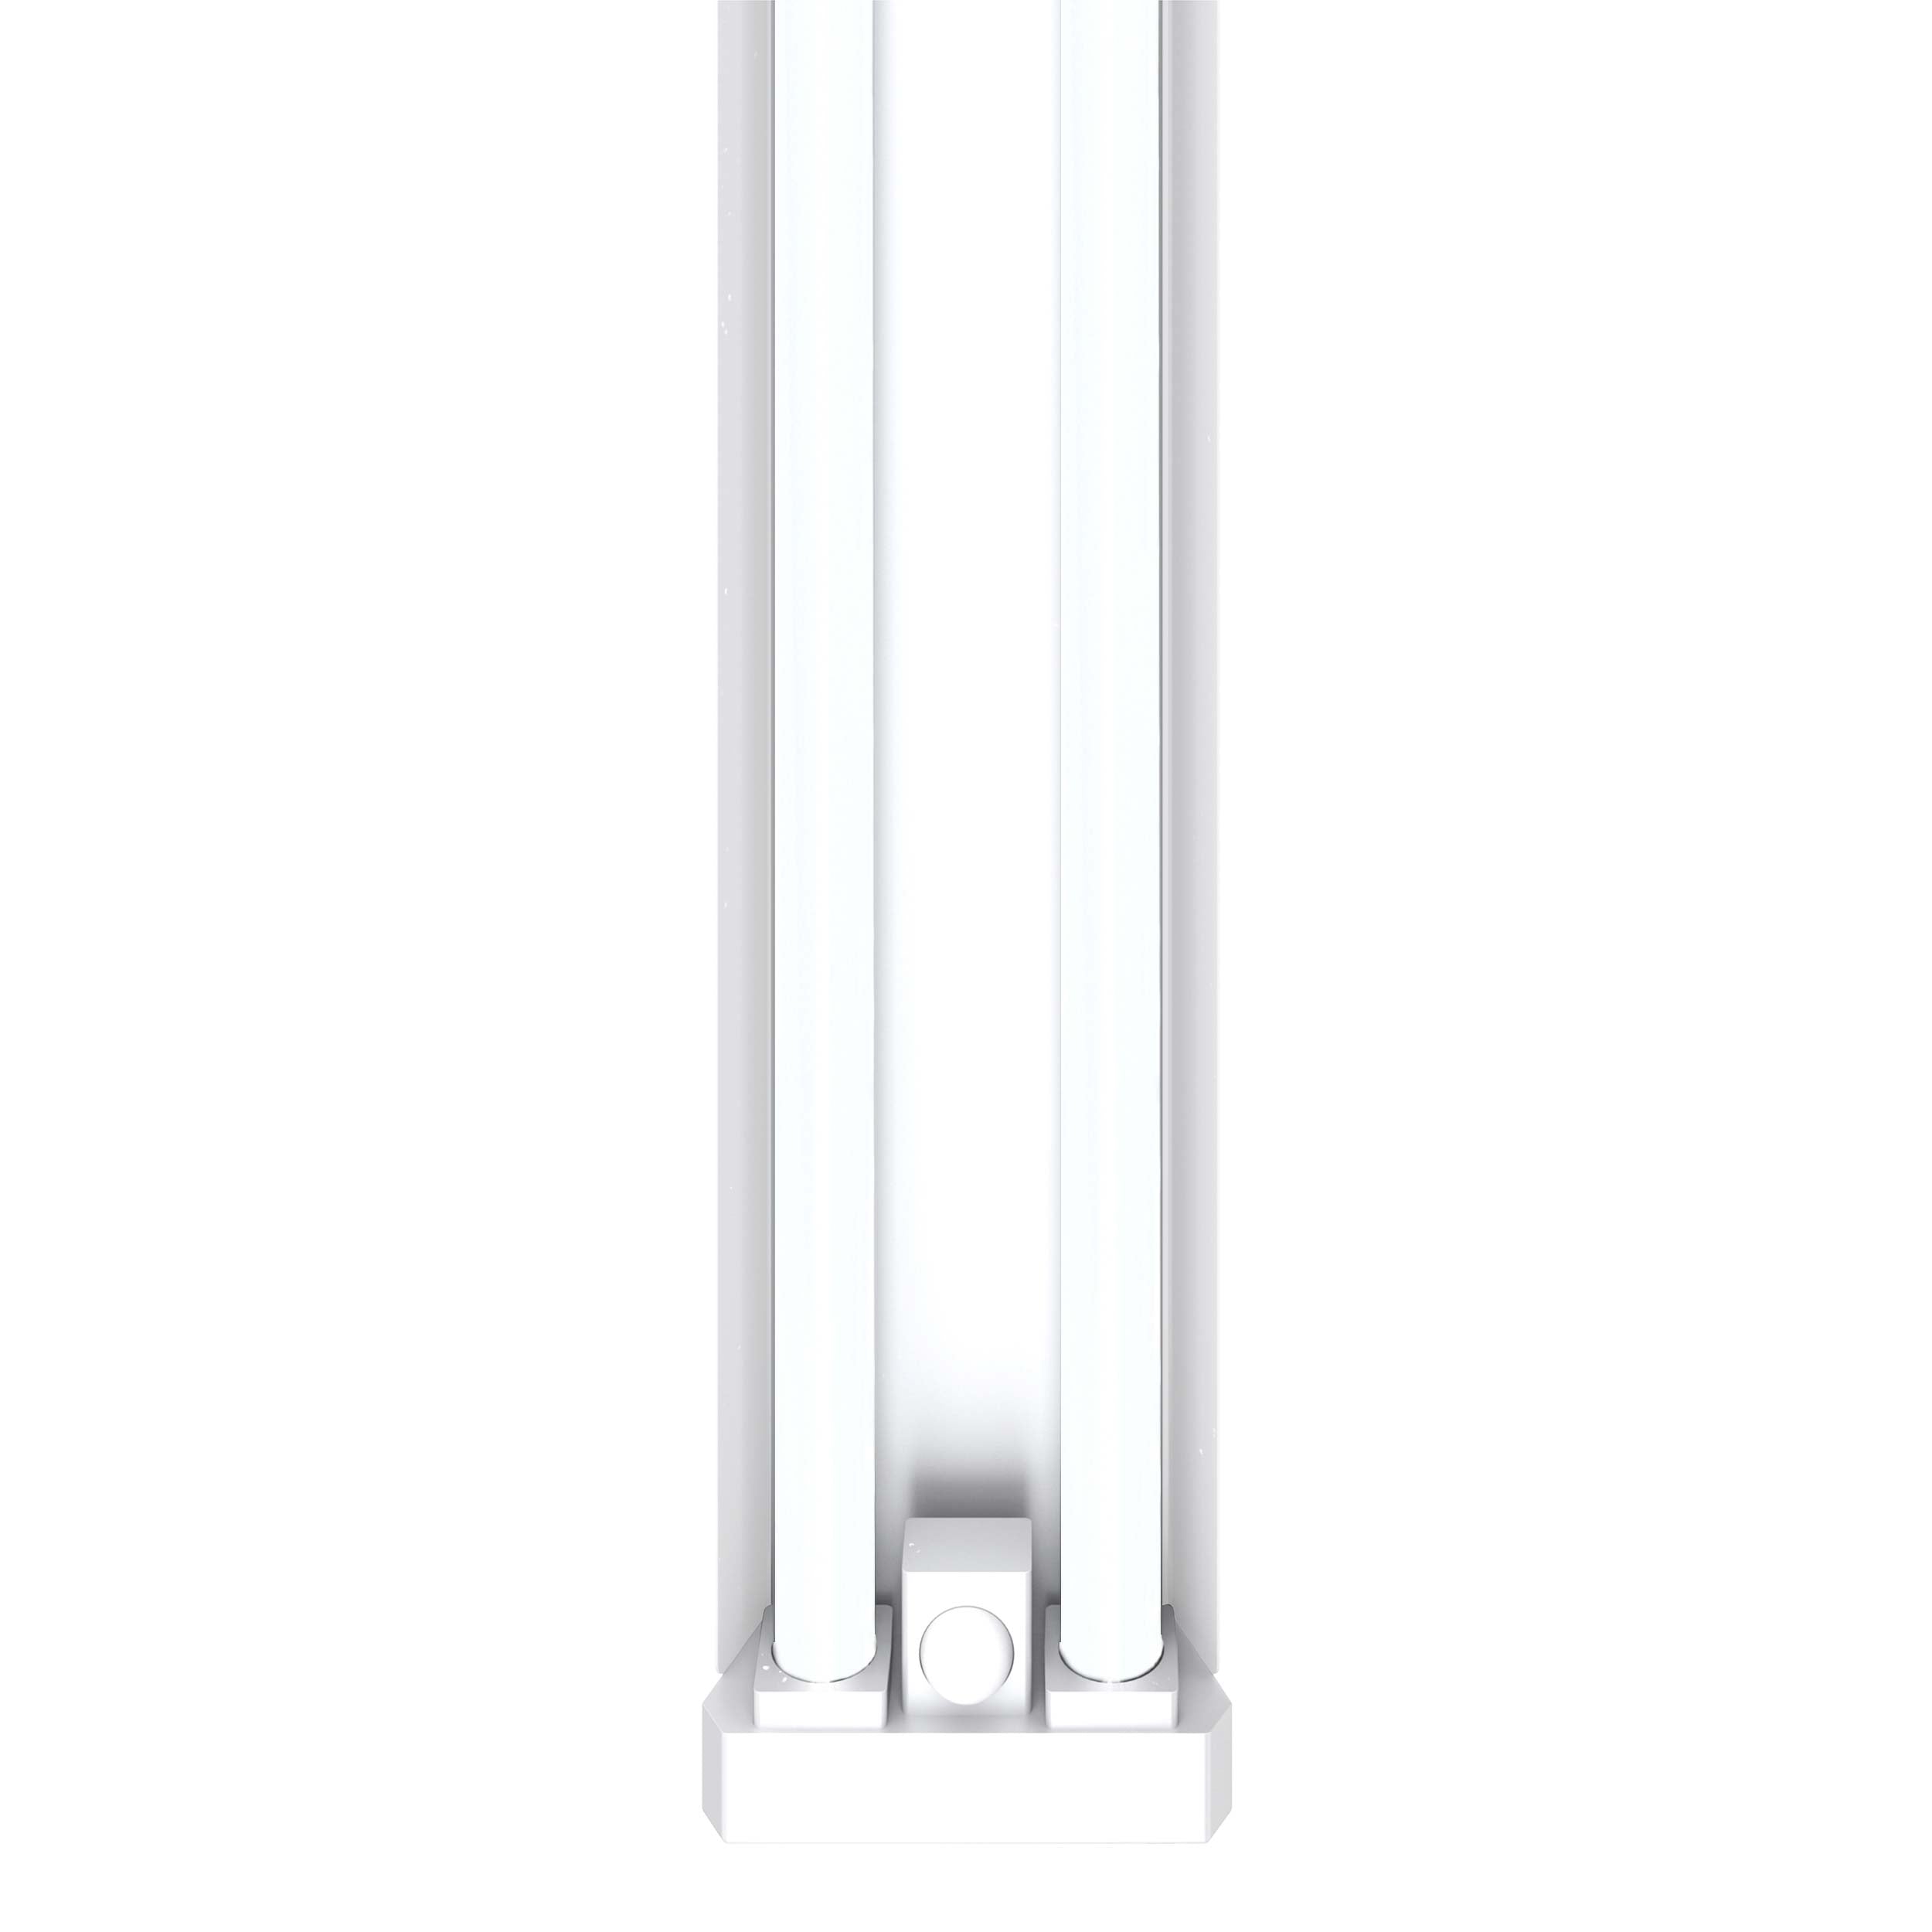 46 LED Linkable Shop Light with Motion Sensor & Remote